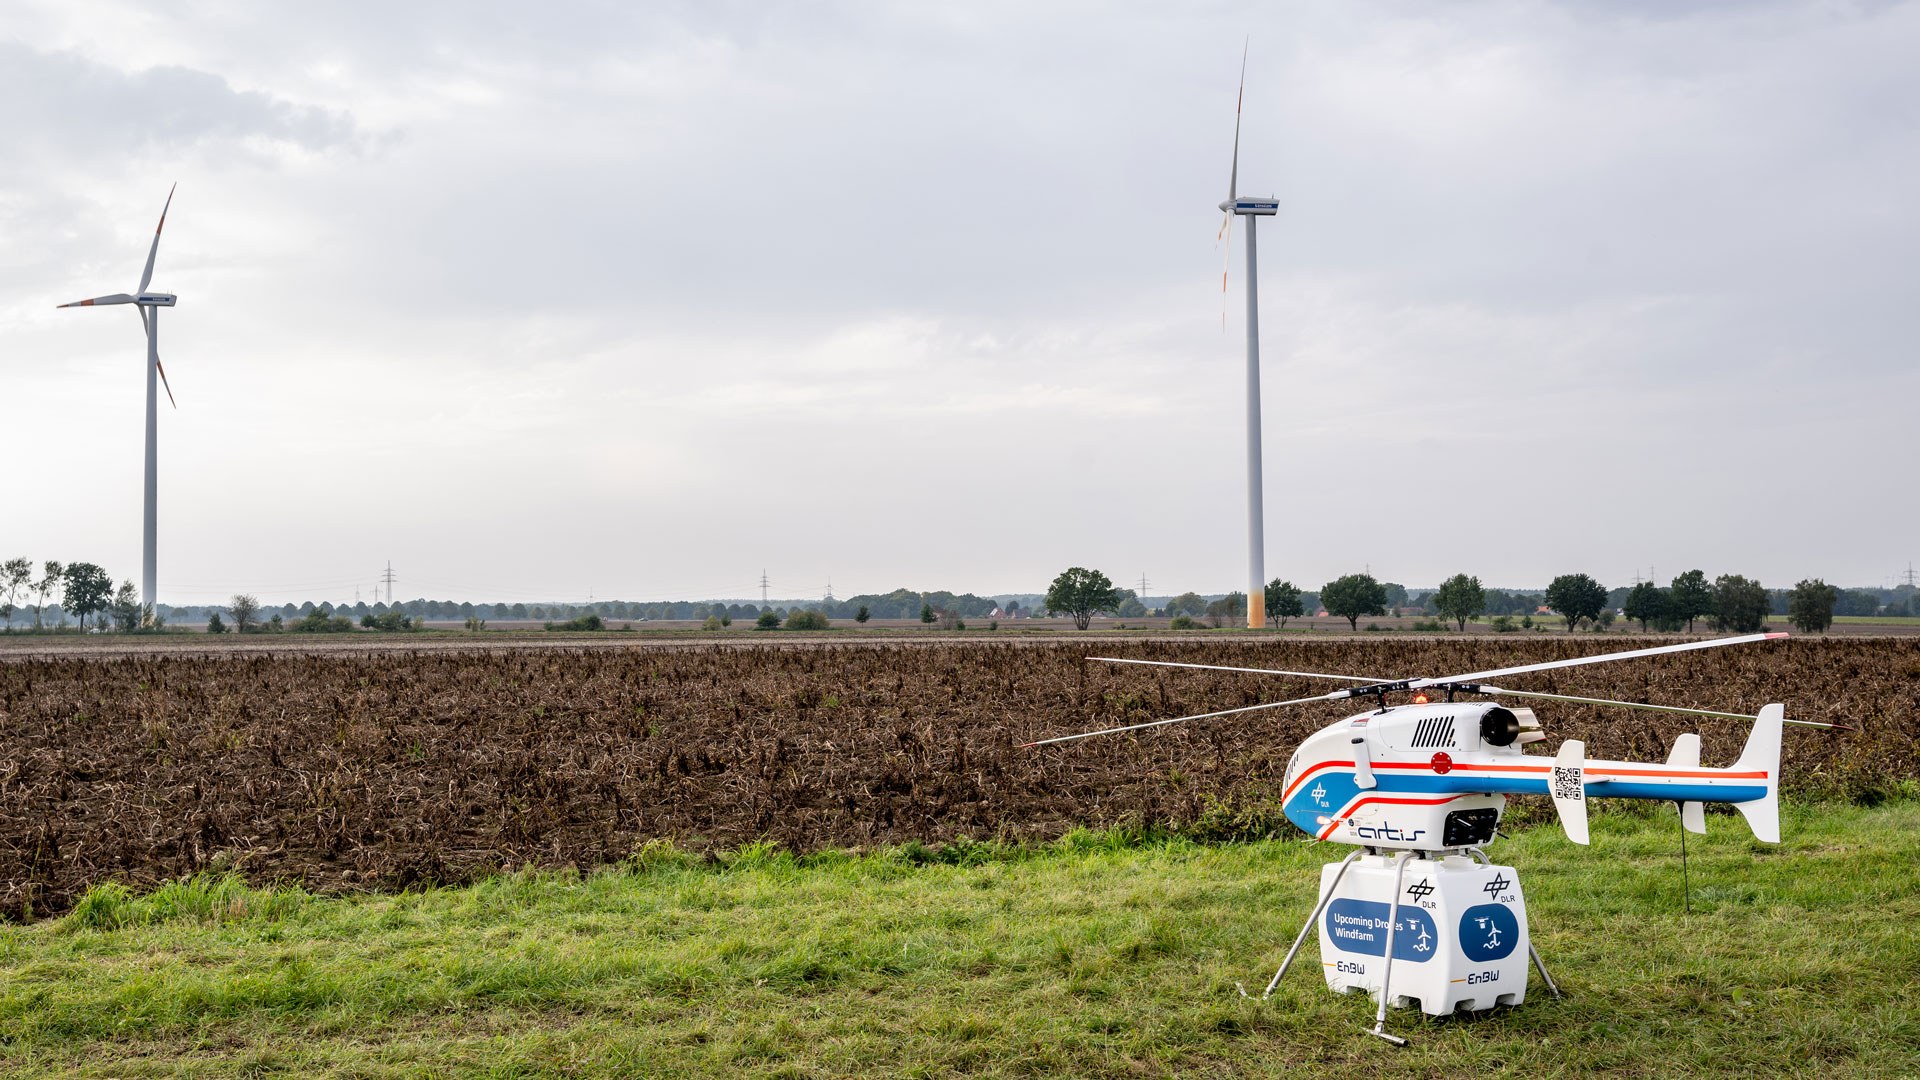 Das DLR untersucht gemeinsam mit dem Energieunternehmen EnBW, ob die Logistik zu Windkraftanlagen auf hoher See mit dem Einsatz von Drohnen vereinfacht werden kann. Für Flugversuche haben Forschende aus dem DLR-Institut für Flugsystemtechnik den unbemannten DLR-Hubschrauber superARTIS eingesetzt.